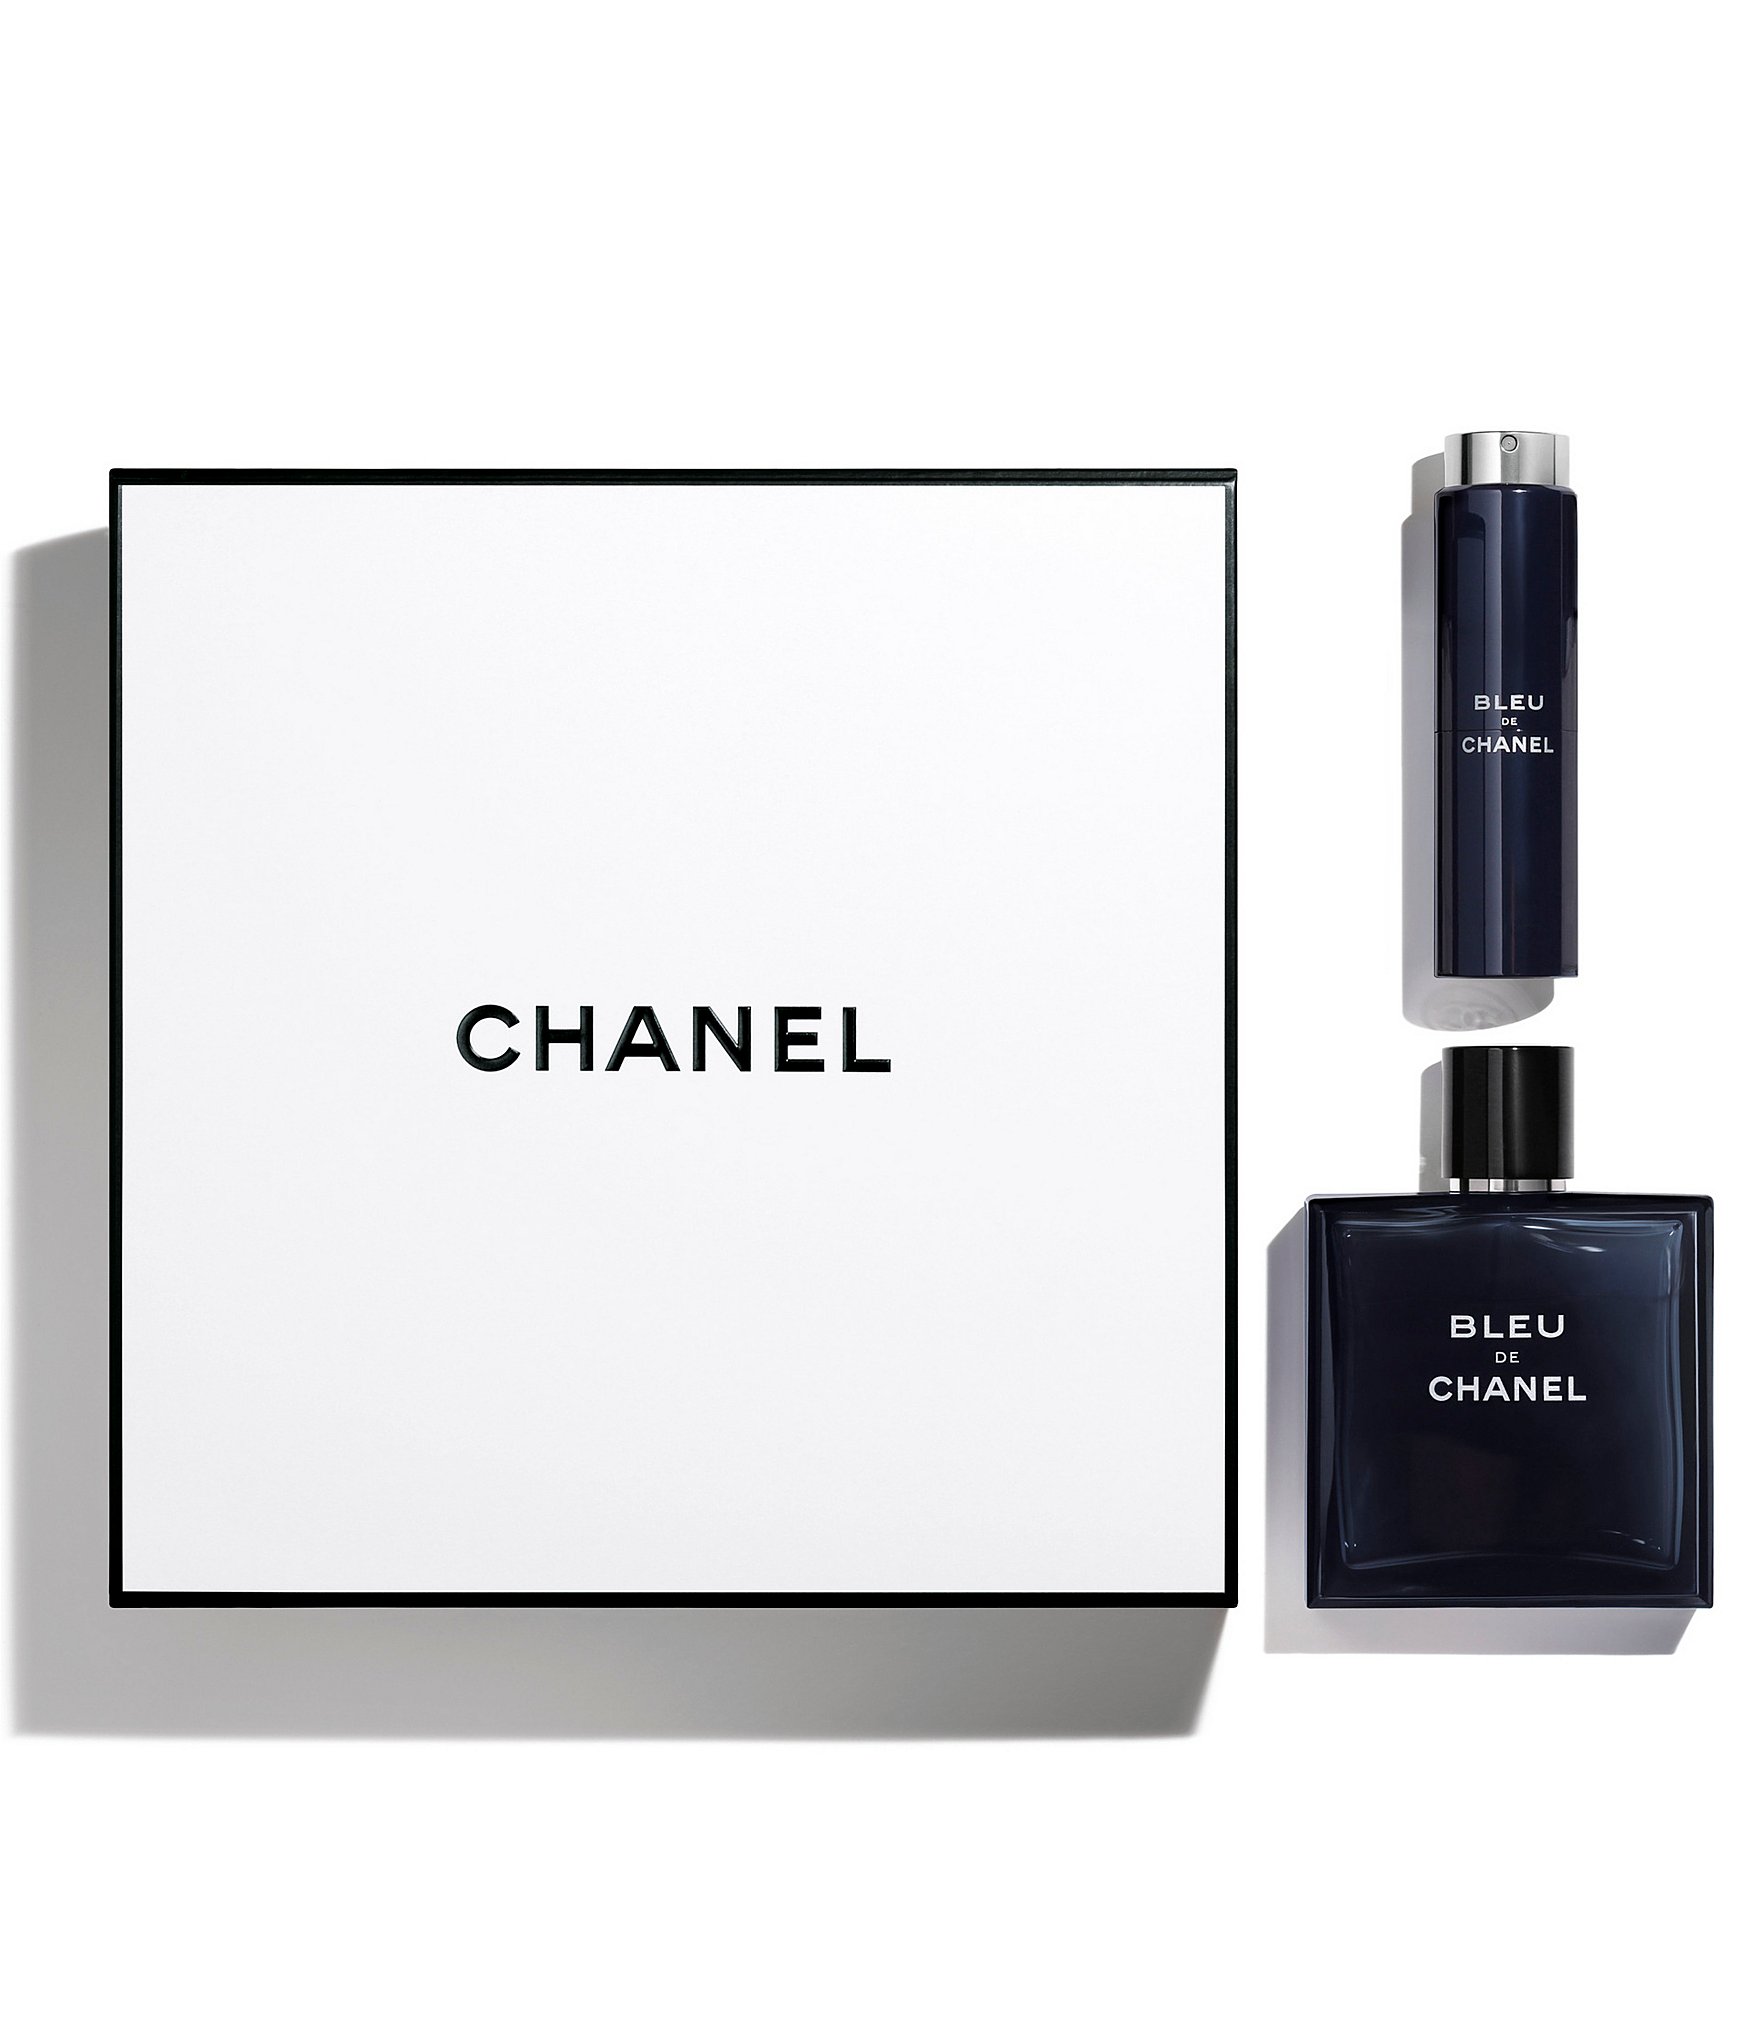 Chanel Bleu de Chanel Eau de Toilette Travel Spray Set